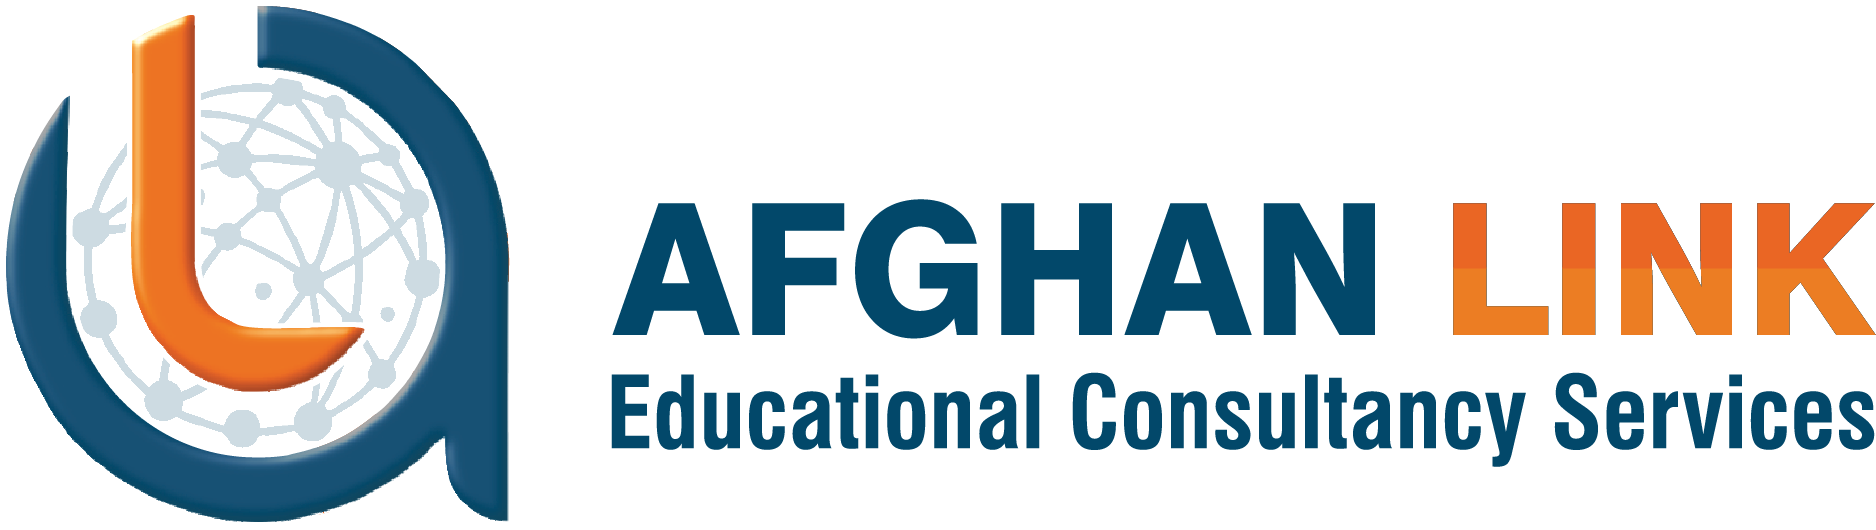 Afghan Link Educational Consultancy